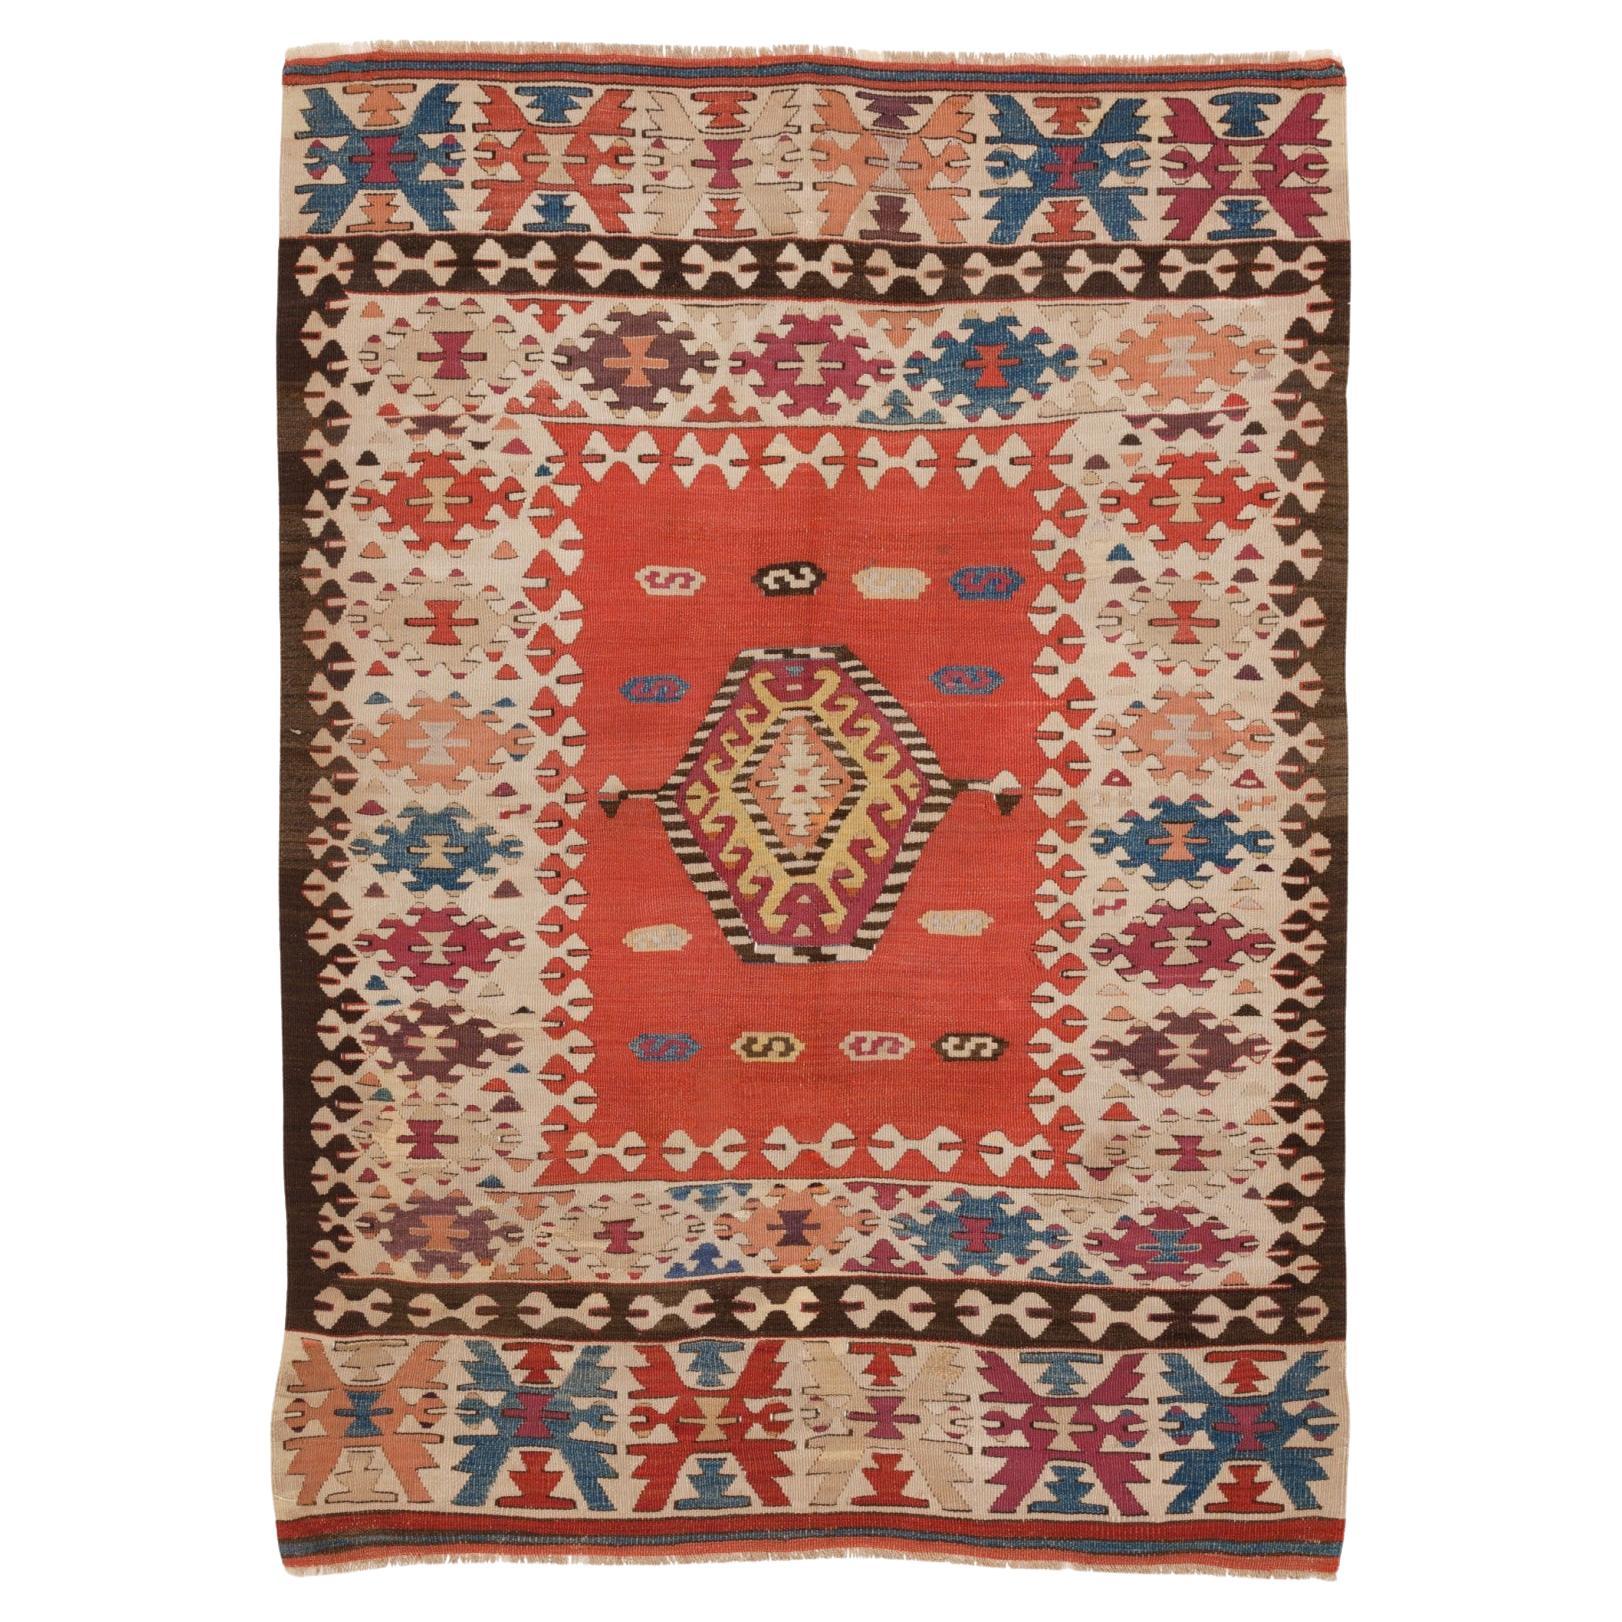 Ancien tapis Kilim d'Istanbul, vieux tapis turc vintage d'Anatolie centrale